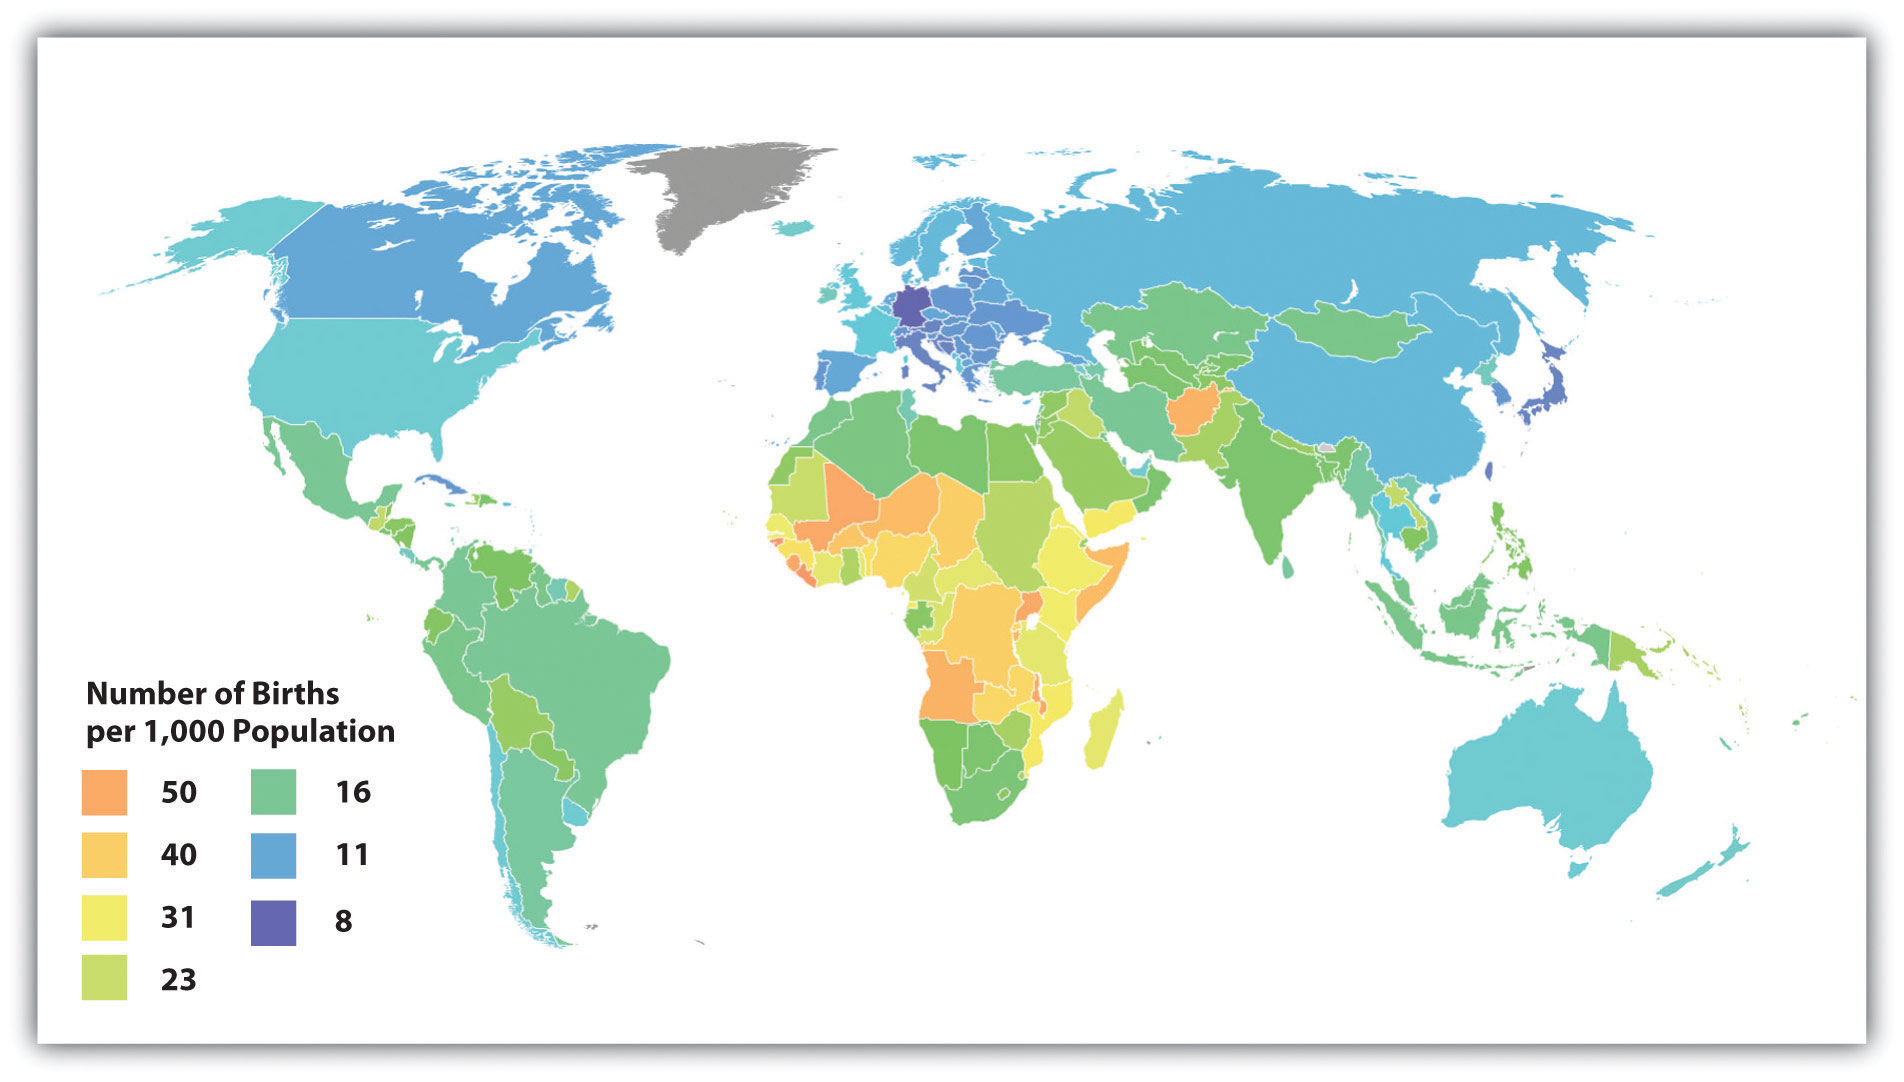 Crude Birth Rates around the World